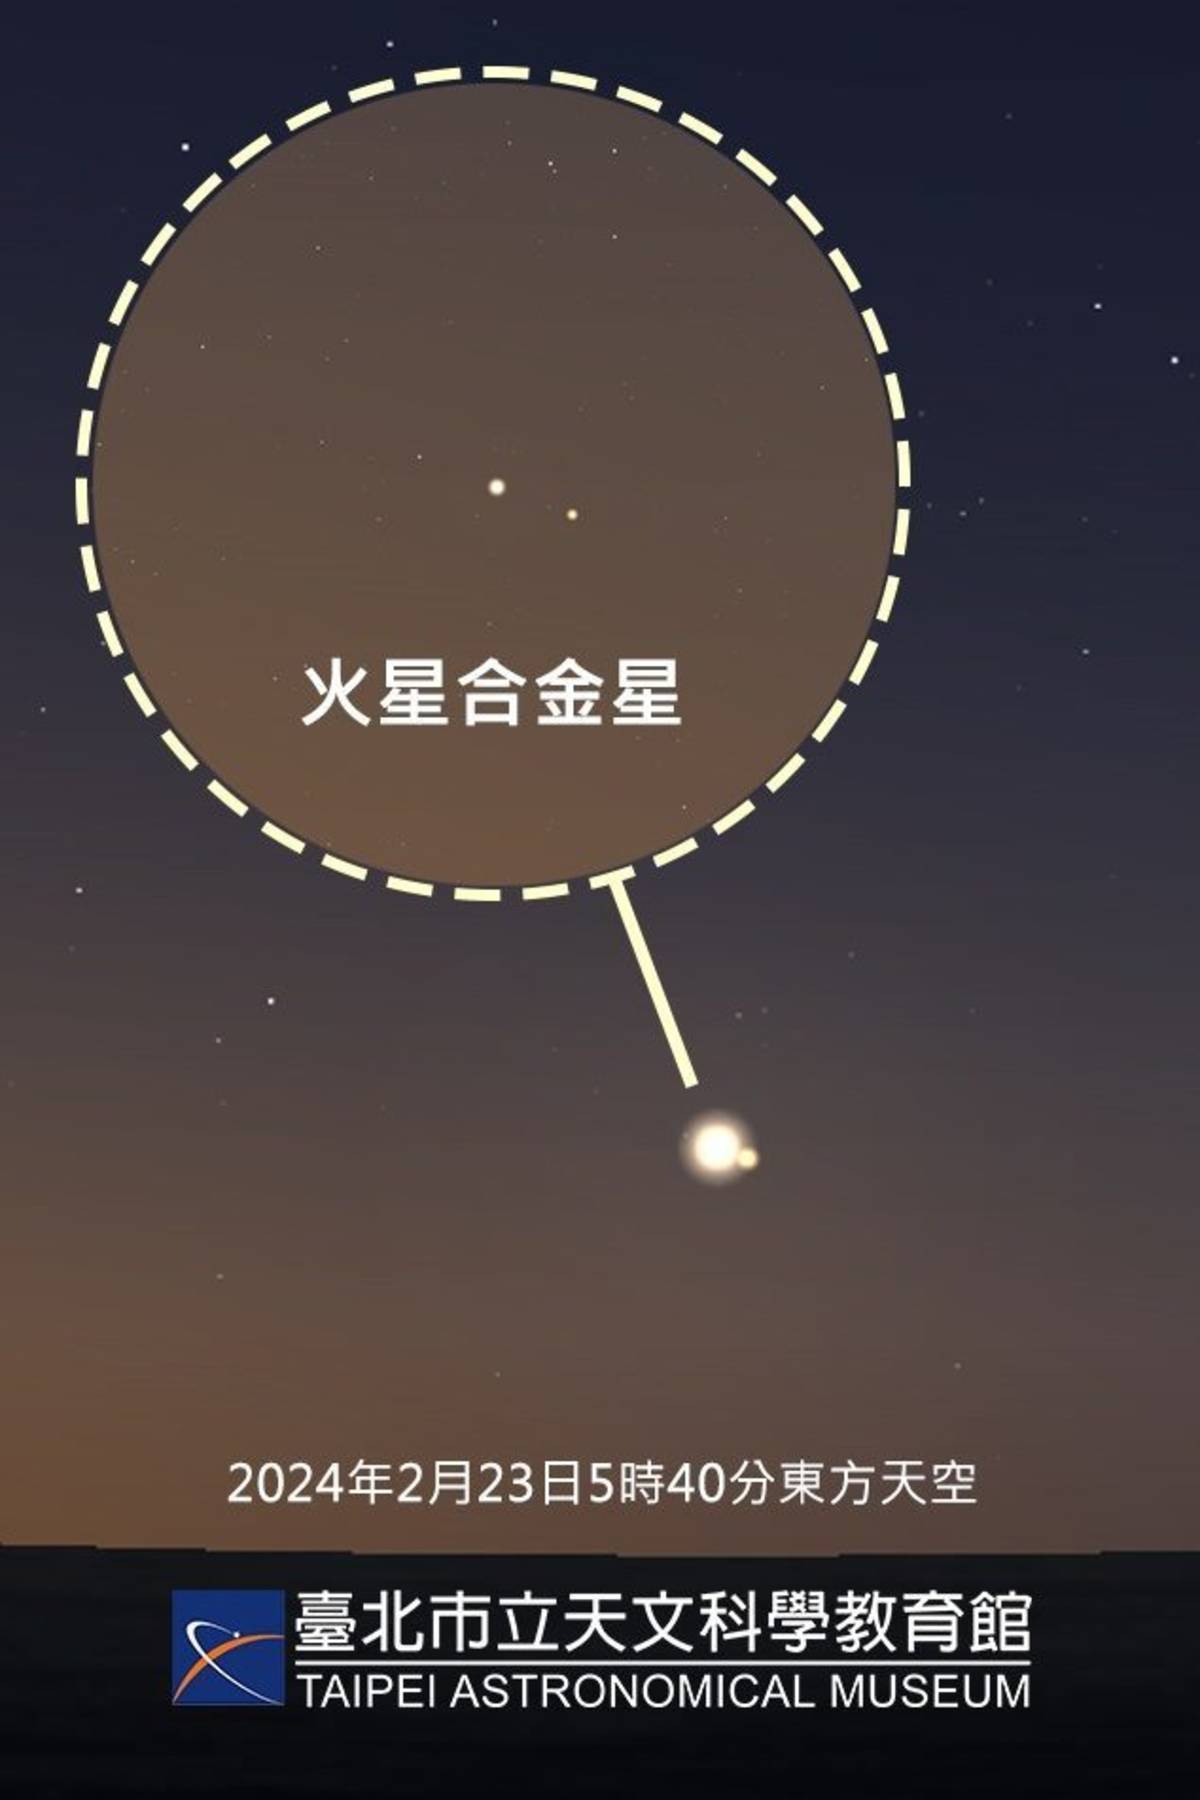 2/22晚上11點將發生「火星合金星」(圖片提供:臺北天文館)